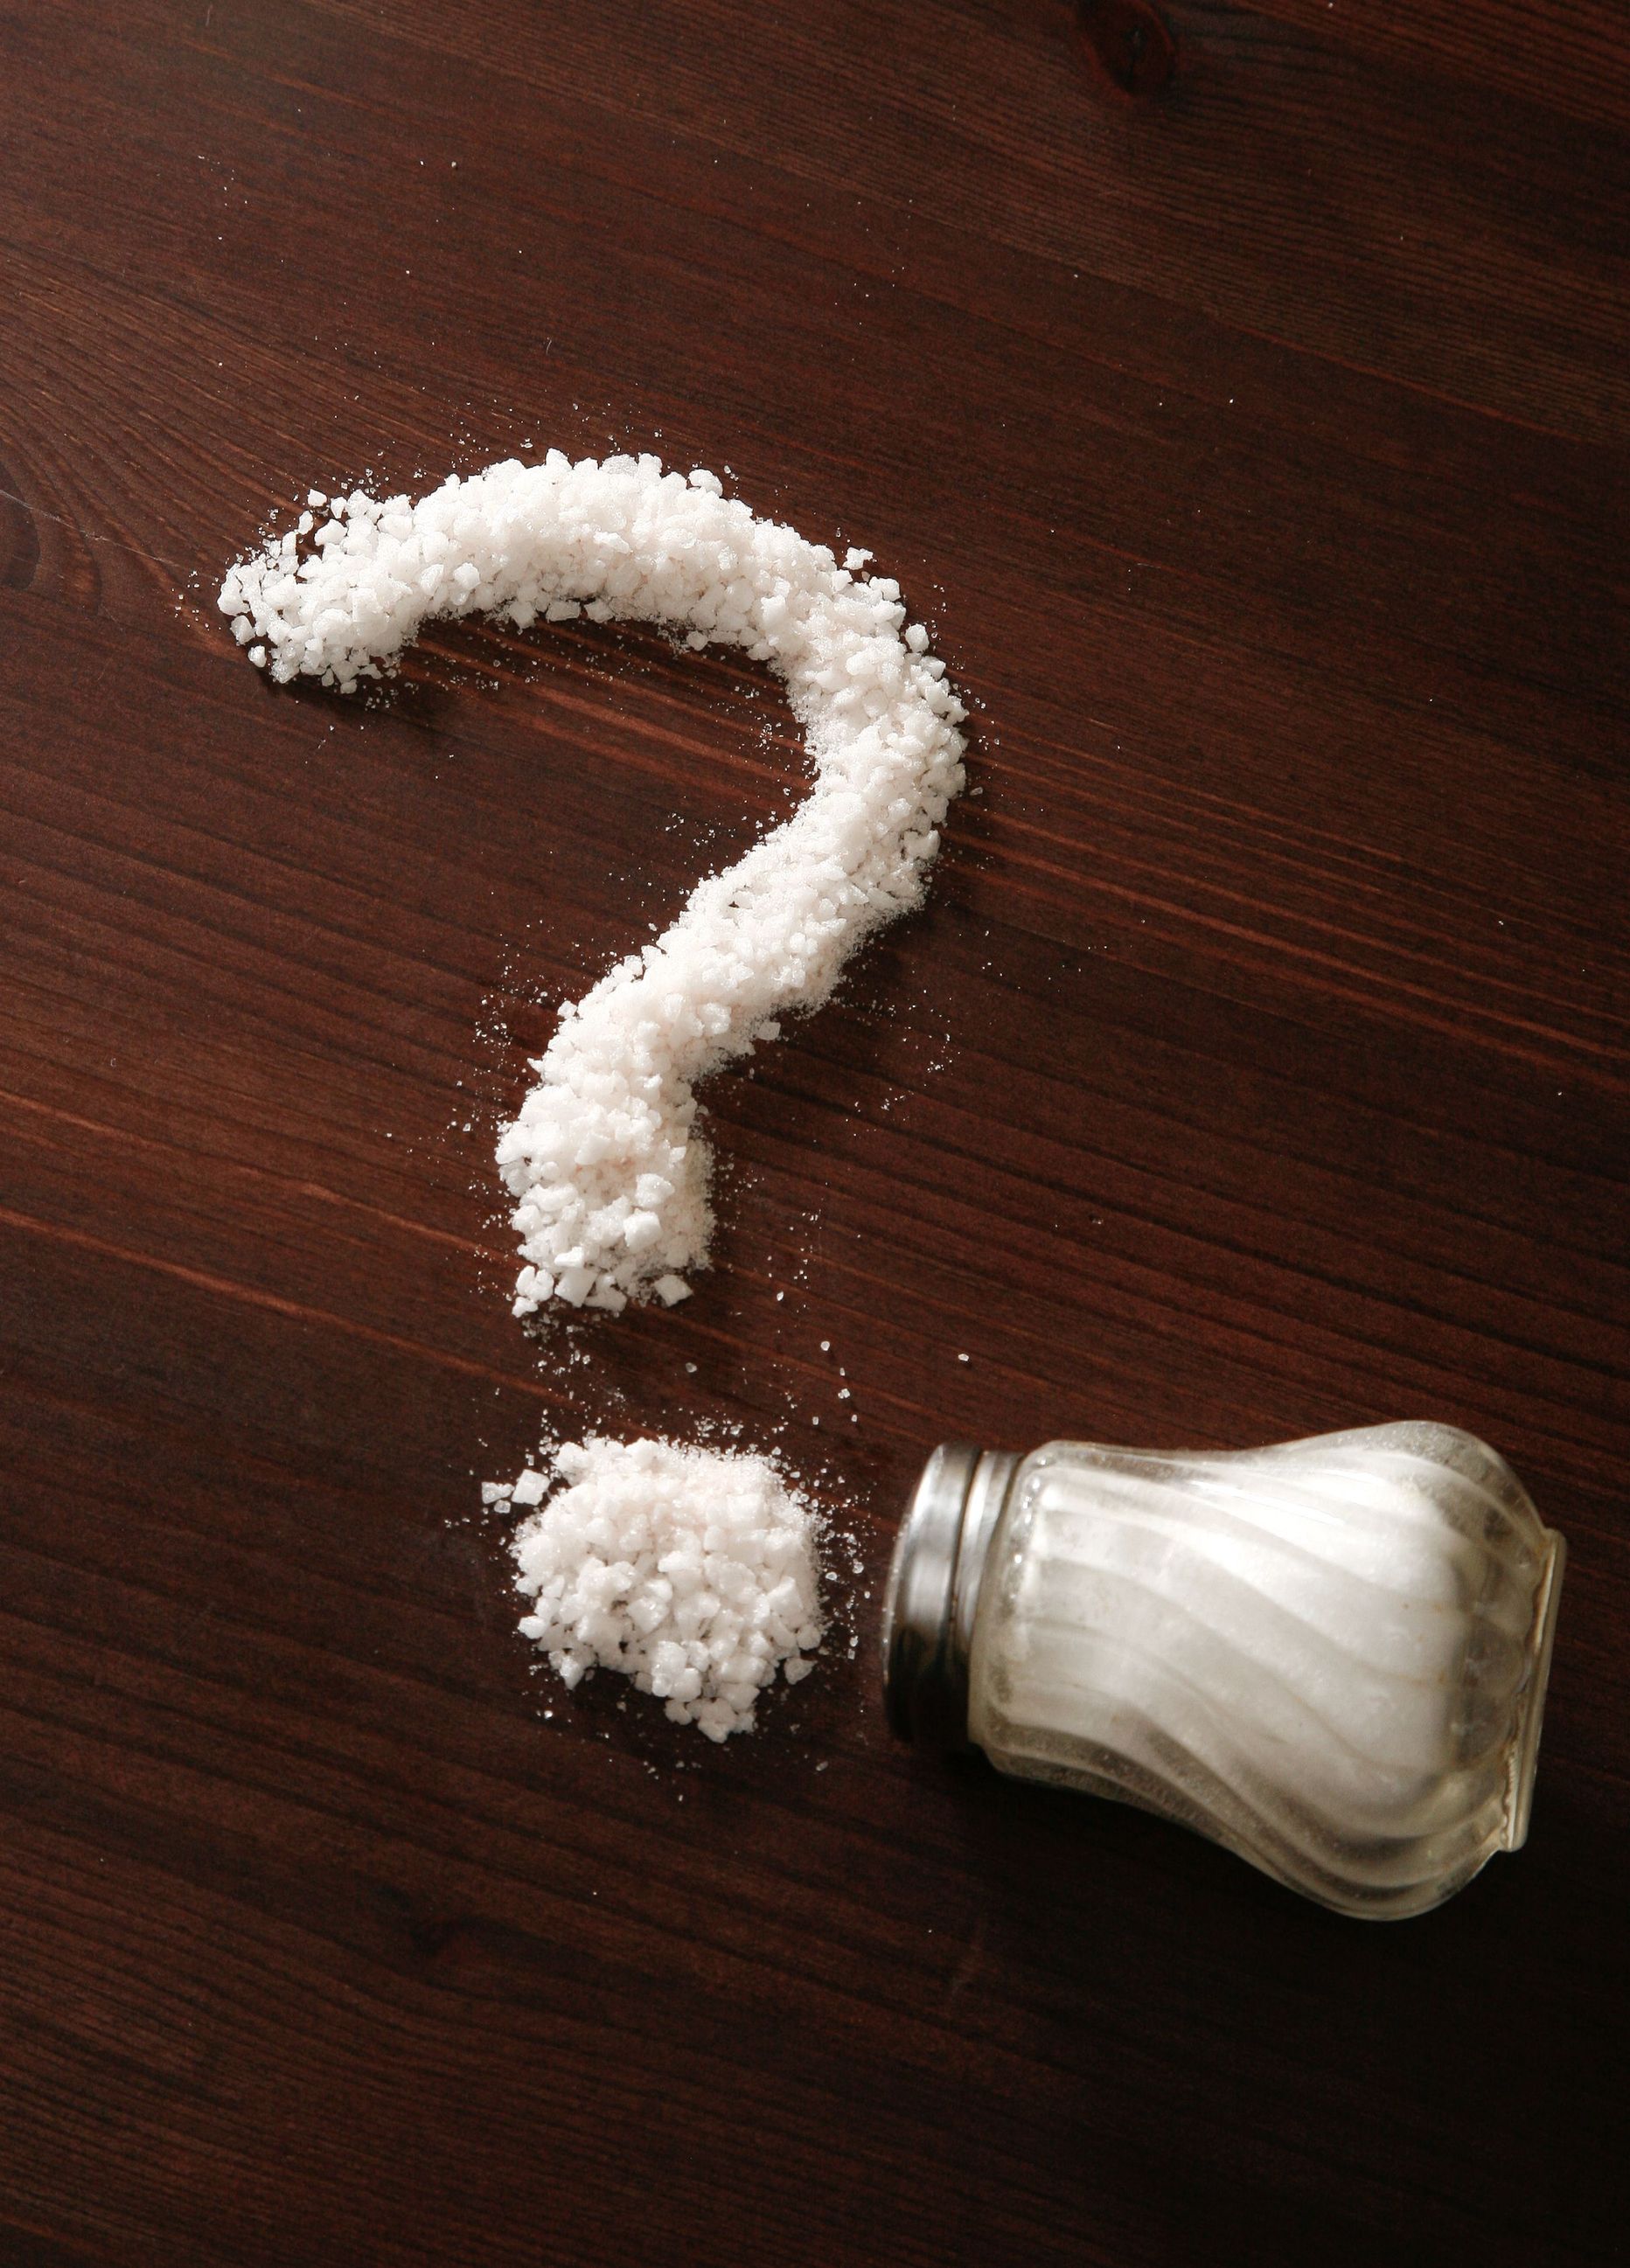 Rohke soola söömine suurendab nii insuldi tekkimise kui ka veresoonkonna haiguste esinemise riski.